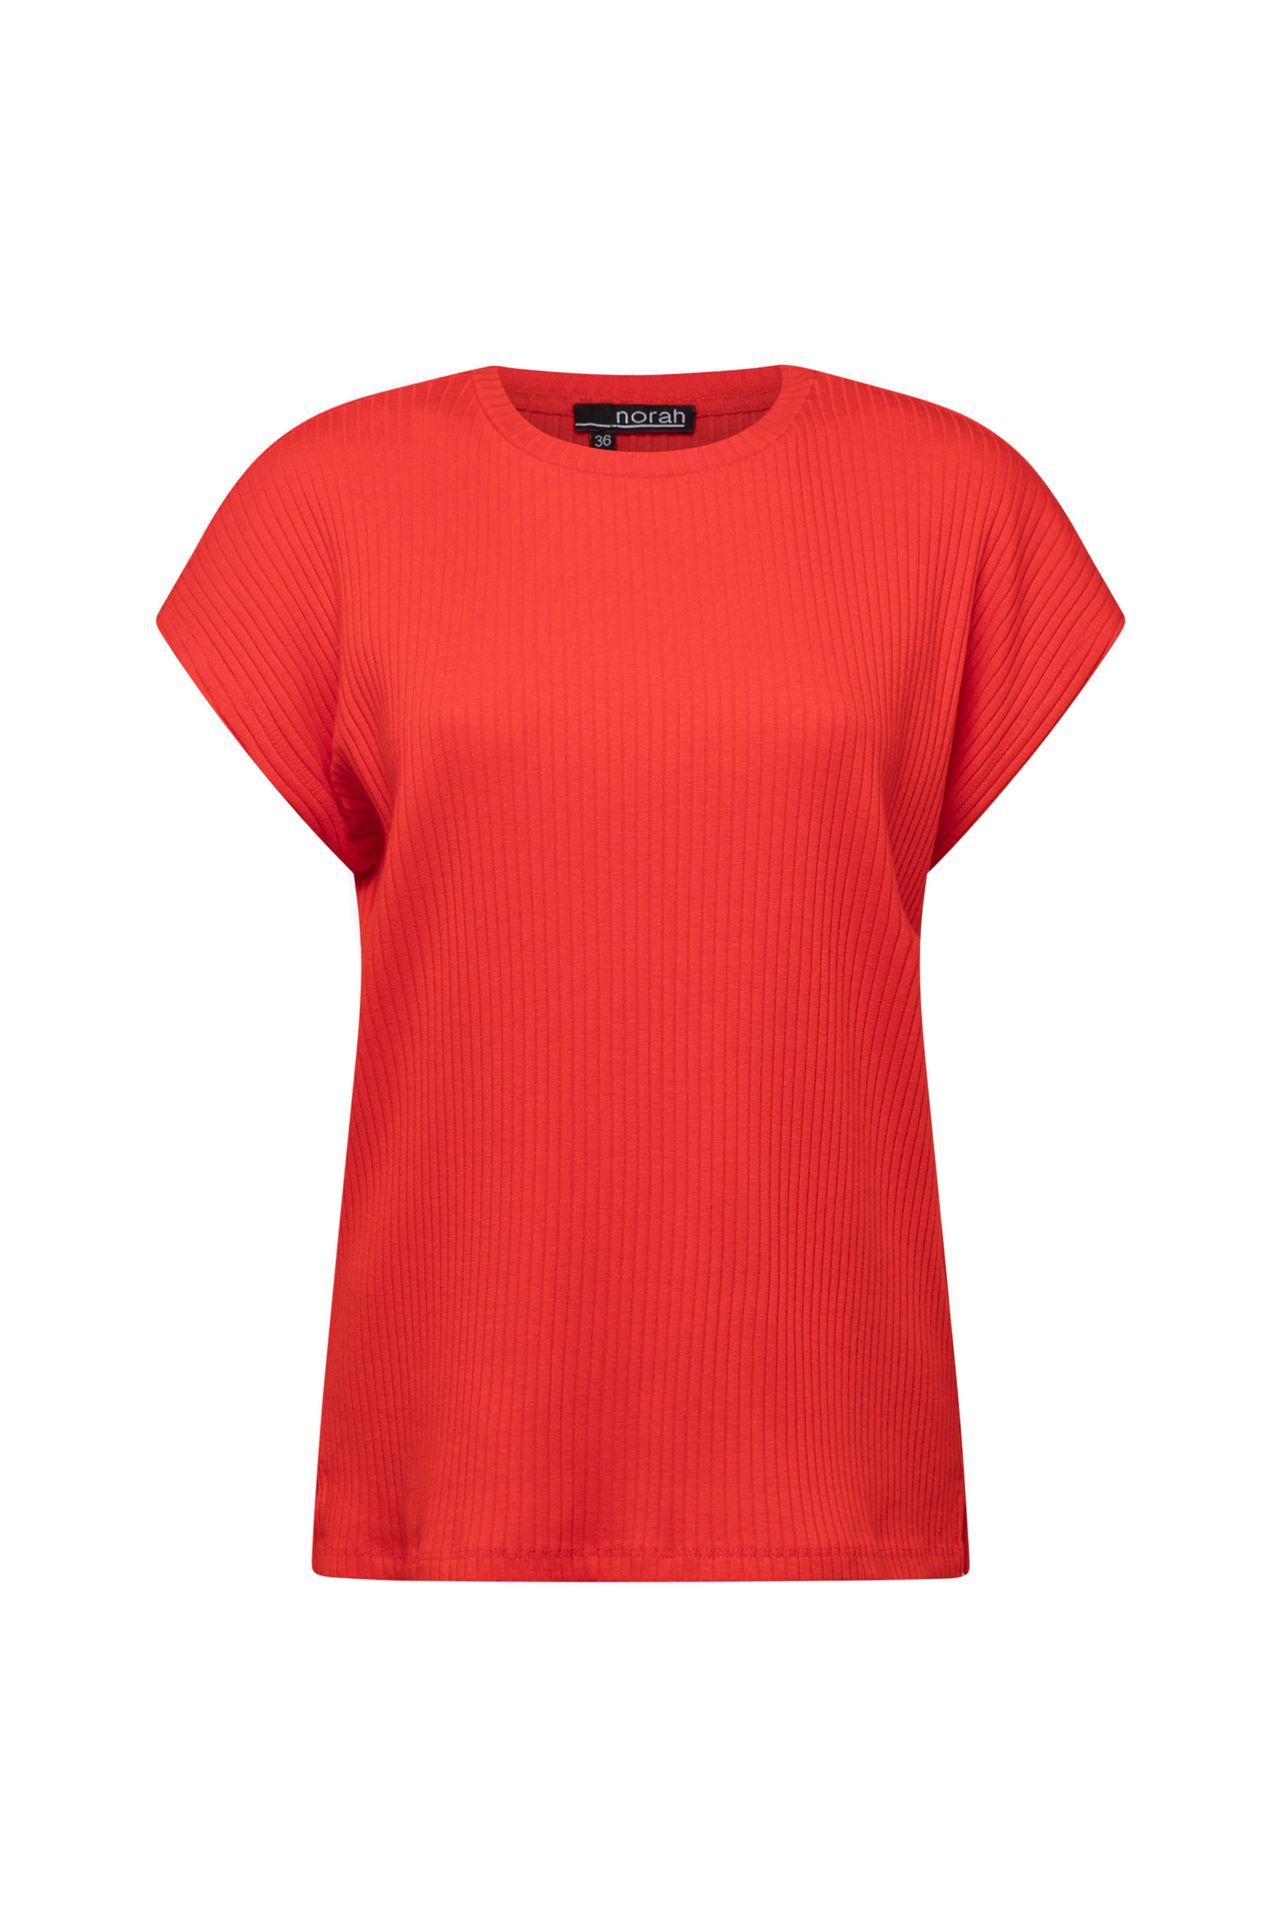 Norah Rood shirt van katoenmix tomato 213489-668